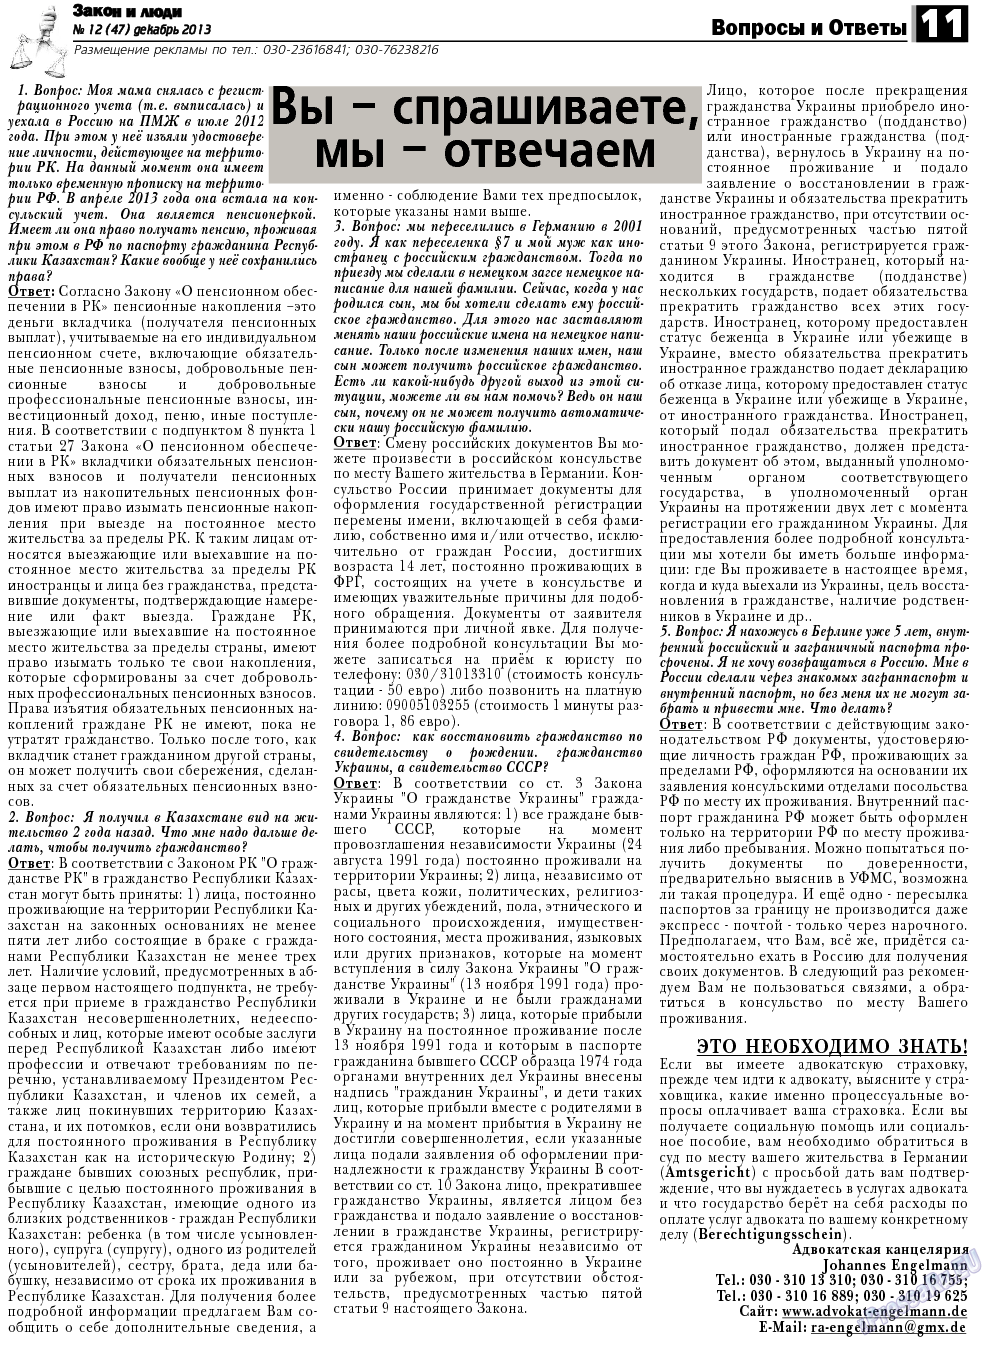 Закон и люди, газета. 2013 №12 стр.11